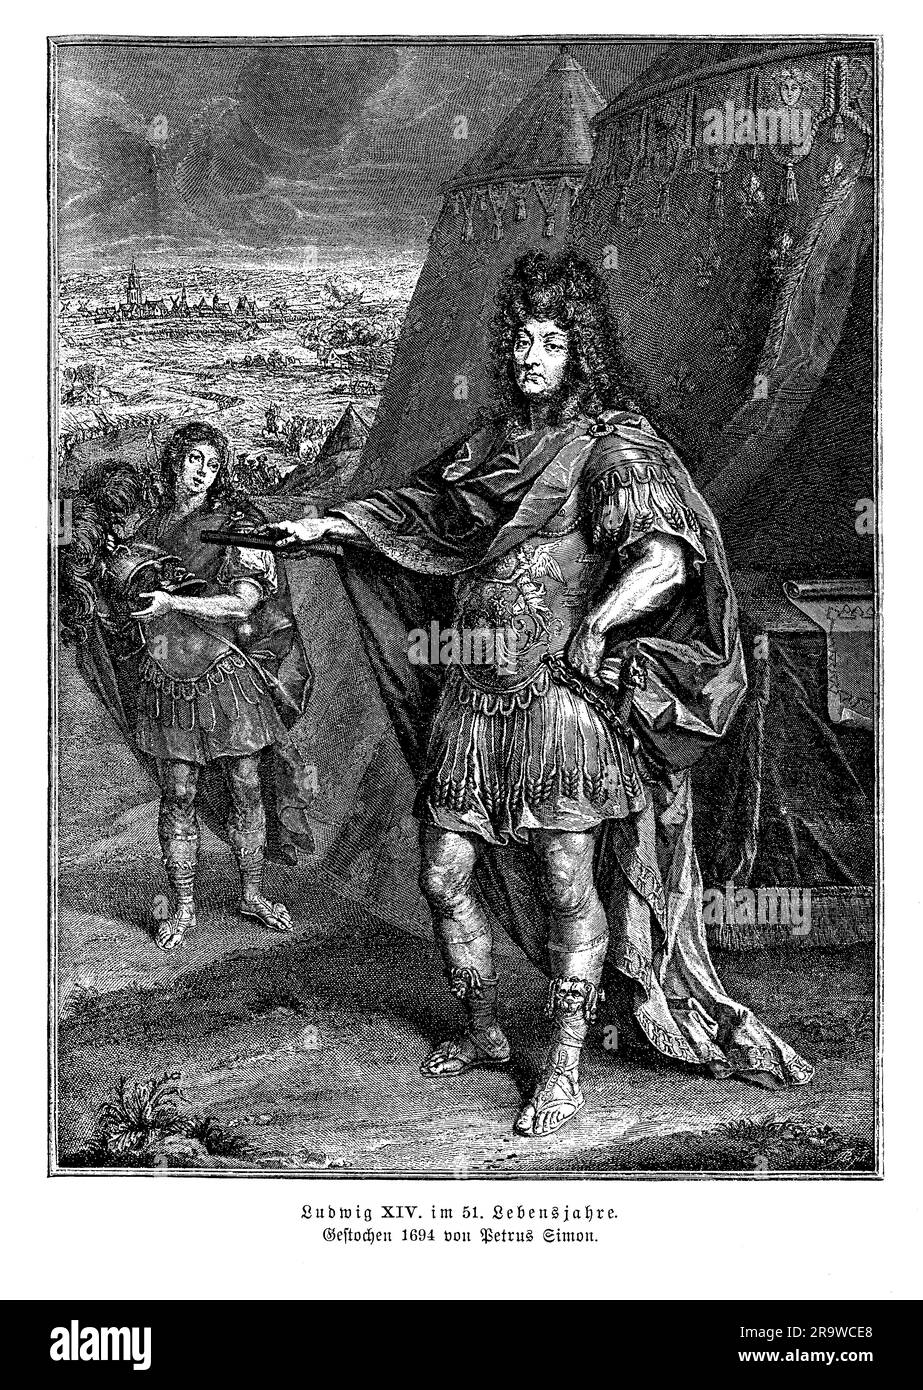 Luigi XIV di Francia, qui in un ritratto a 51 anni, noto anche come Re Sole, fu un monarca che governò la Francia dal 1643 fino alla sua morte nel 1715. È meglio conosciuto per la sua sontuosa corte alla Reggia di Versailles, che trasformò nel centro della vita politica e culturale in Francia. Luigi XIV fu un monarca assoluto che centralizzò il potere nella corte reale e promosse una forte identità nazionale attraverso il suo patrocinio delle arti e le sue conquiste militari. Condusse diverse guerre, tra cui la guerra franco-olandese e la guerra di successione spagnola, al fine di espandere il territorio francese Foto Stock